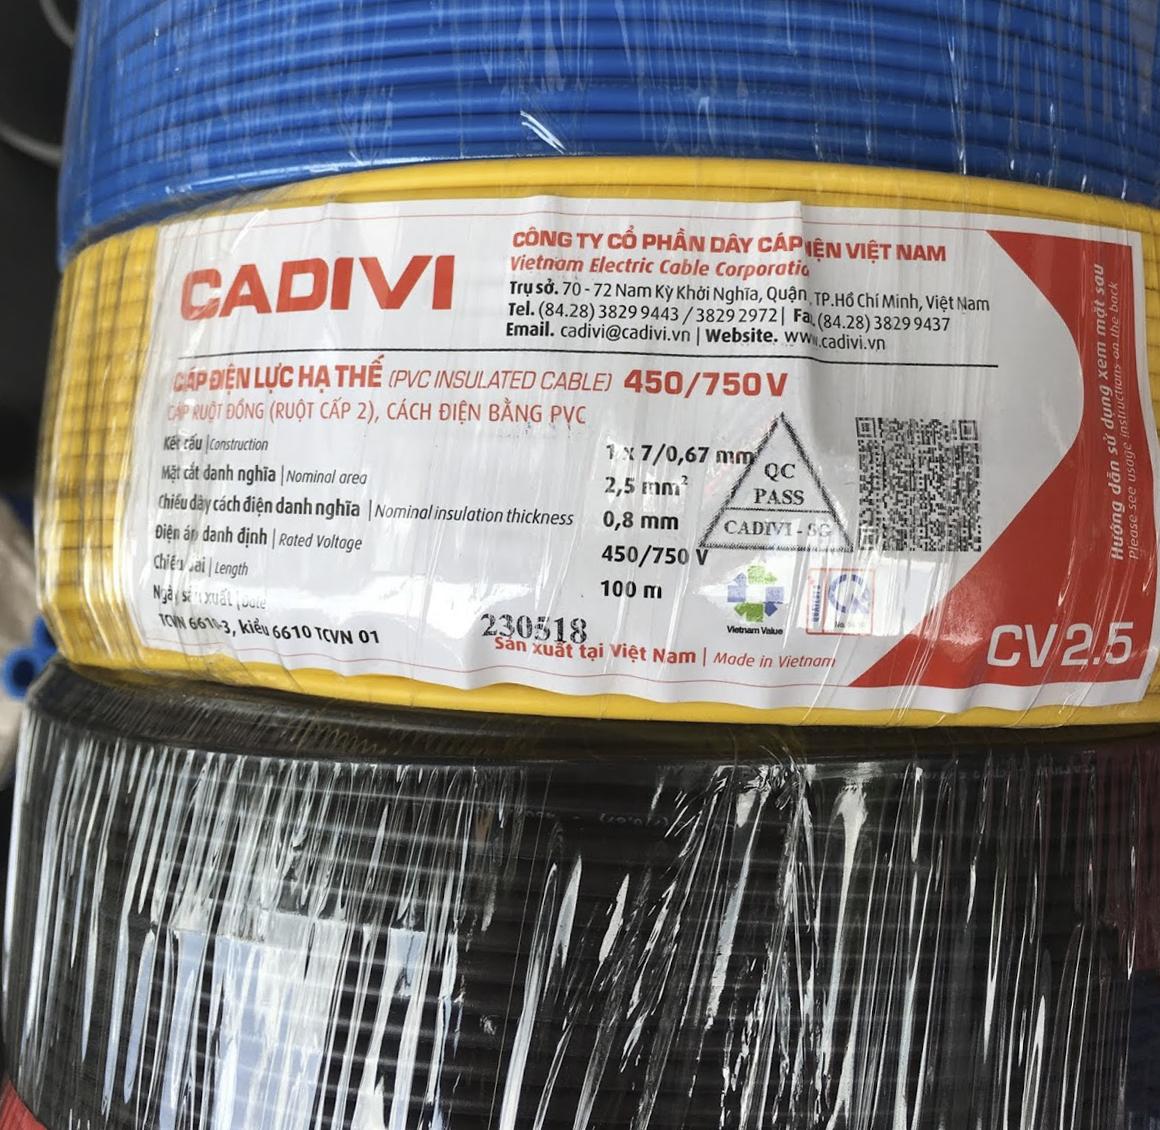 Dây điện Cadivi 2.5 chịu tải bao nhiêu